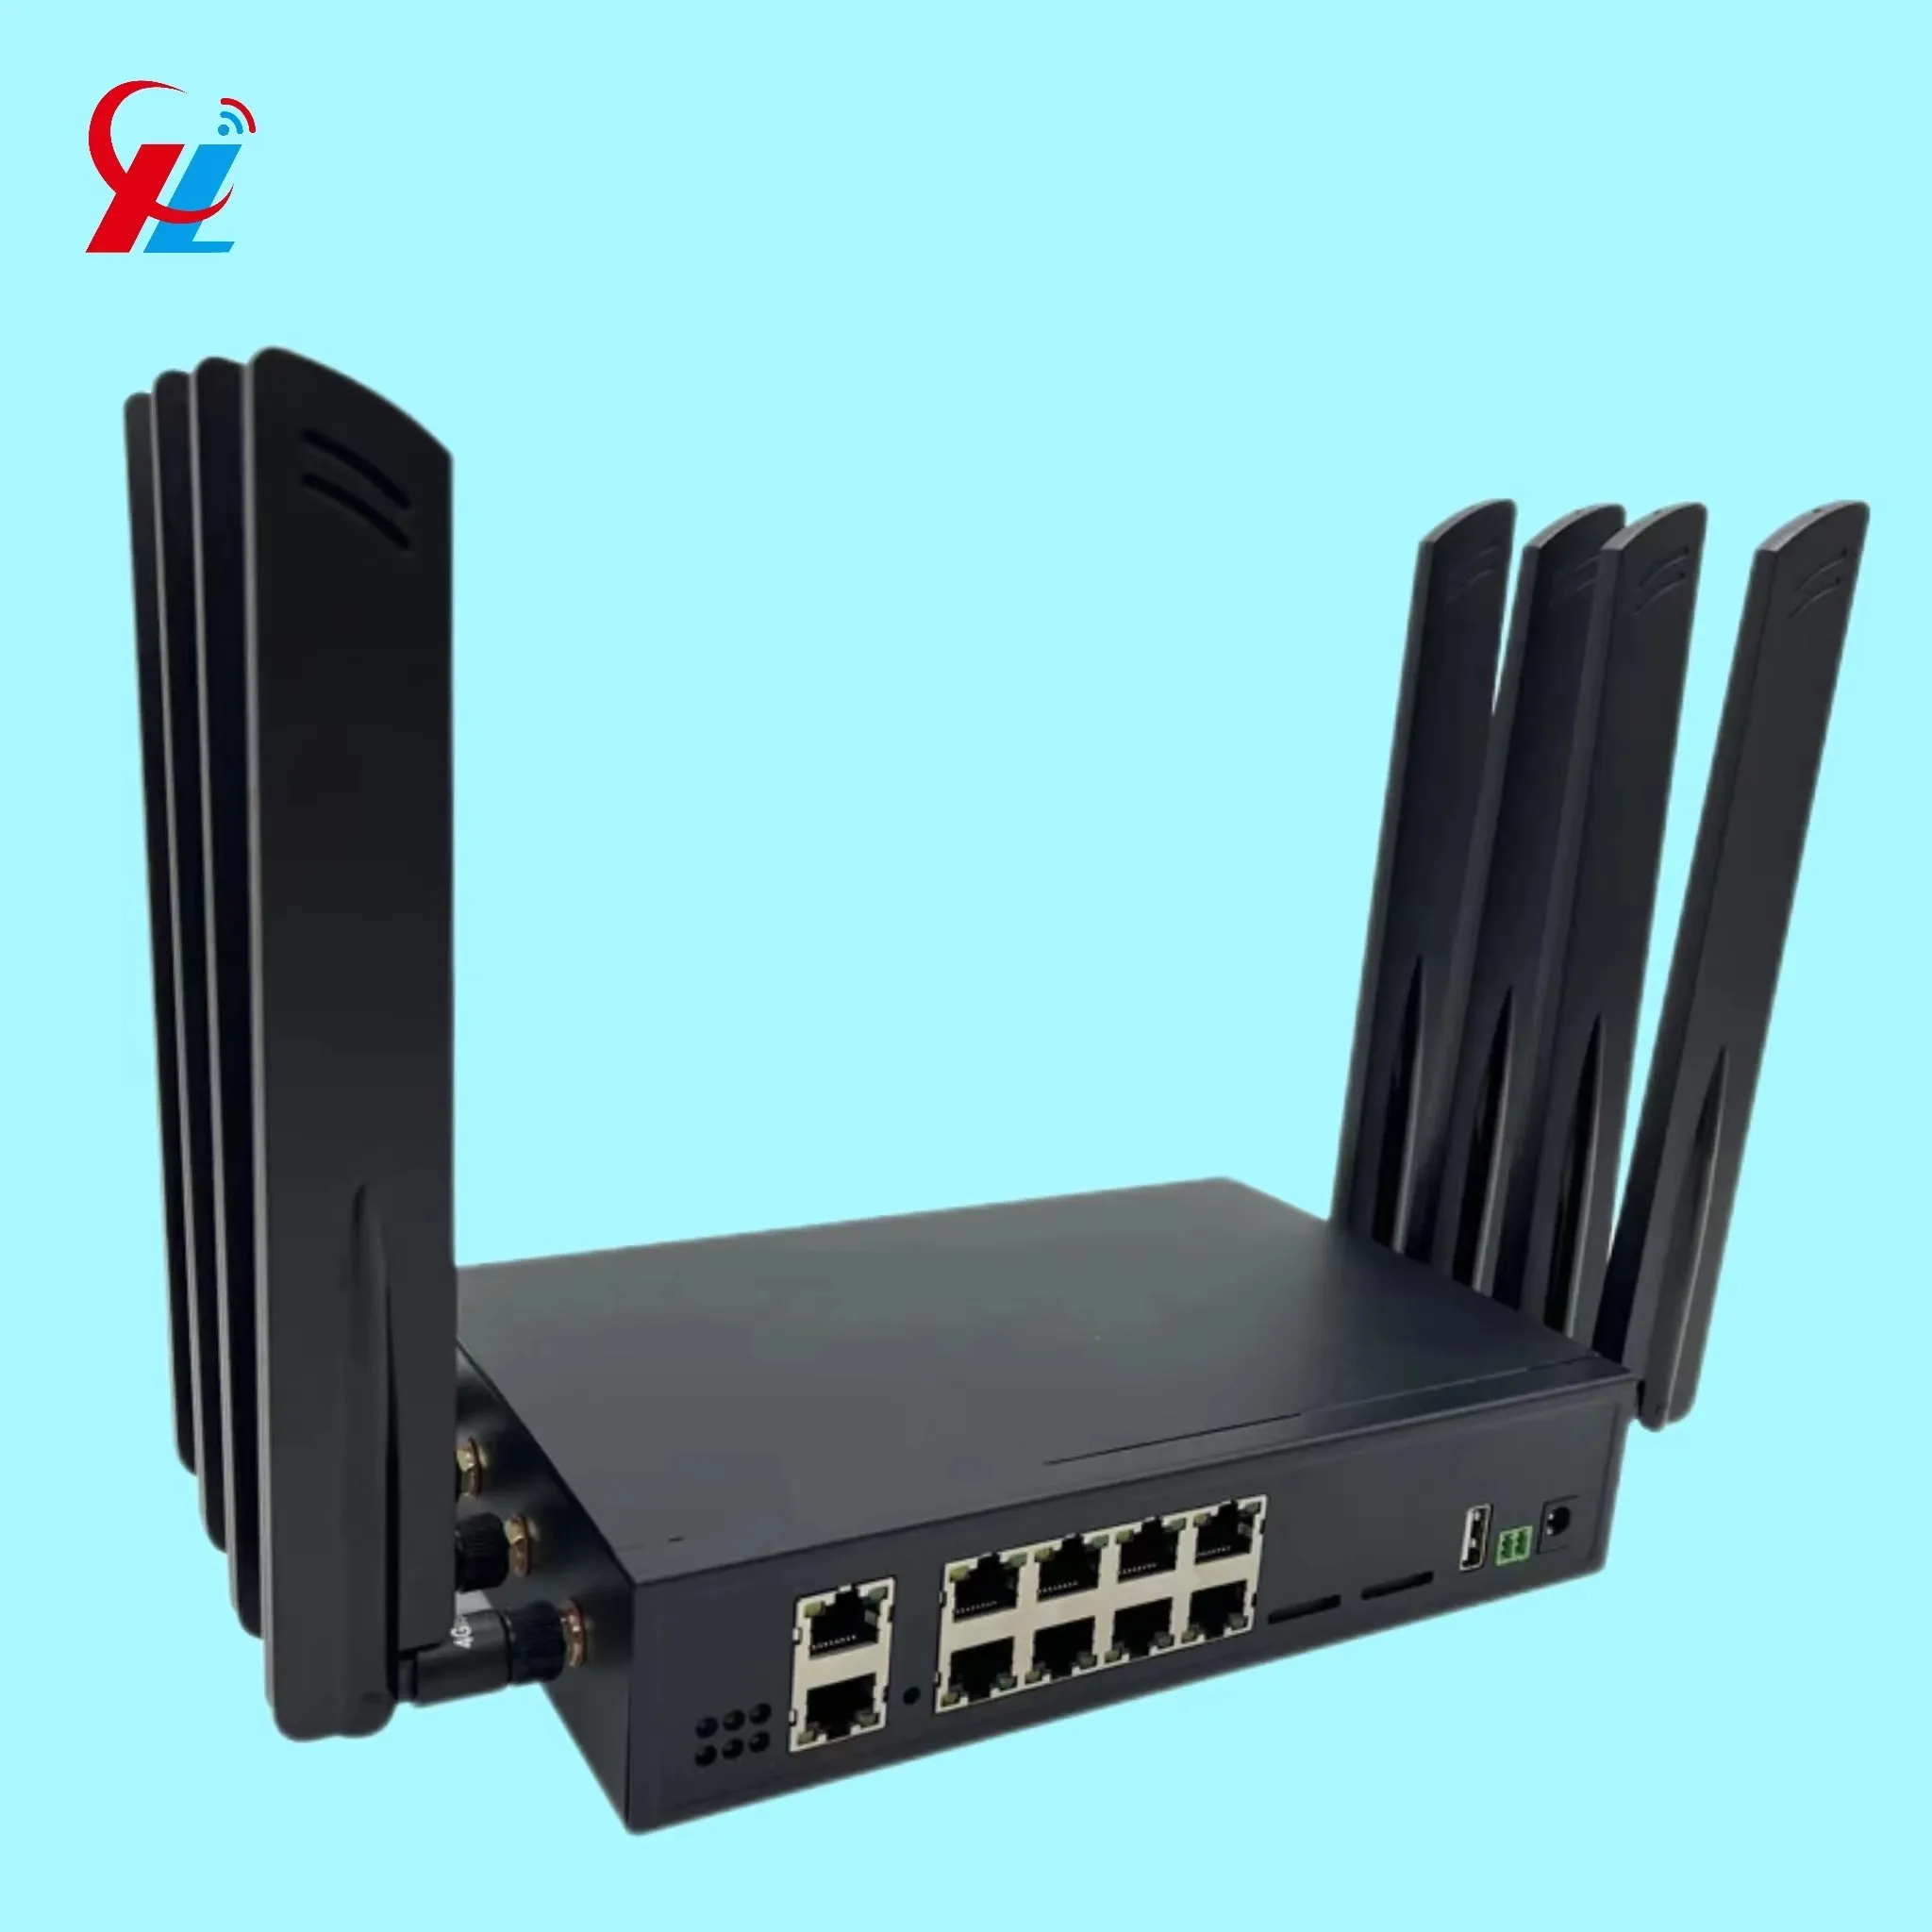 Expédition rapide HC-G80 le point d'accès 5G débloqué Openwrt double bande Wifi AX3000 Gigabit Cpe routeur de qualité industrielle